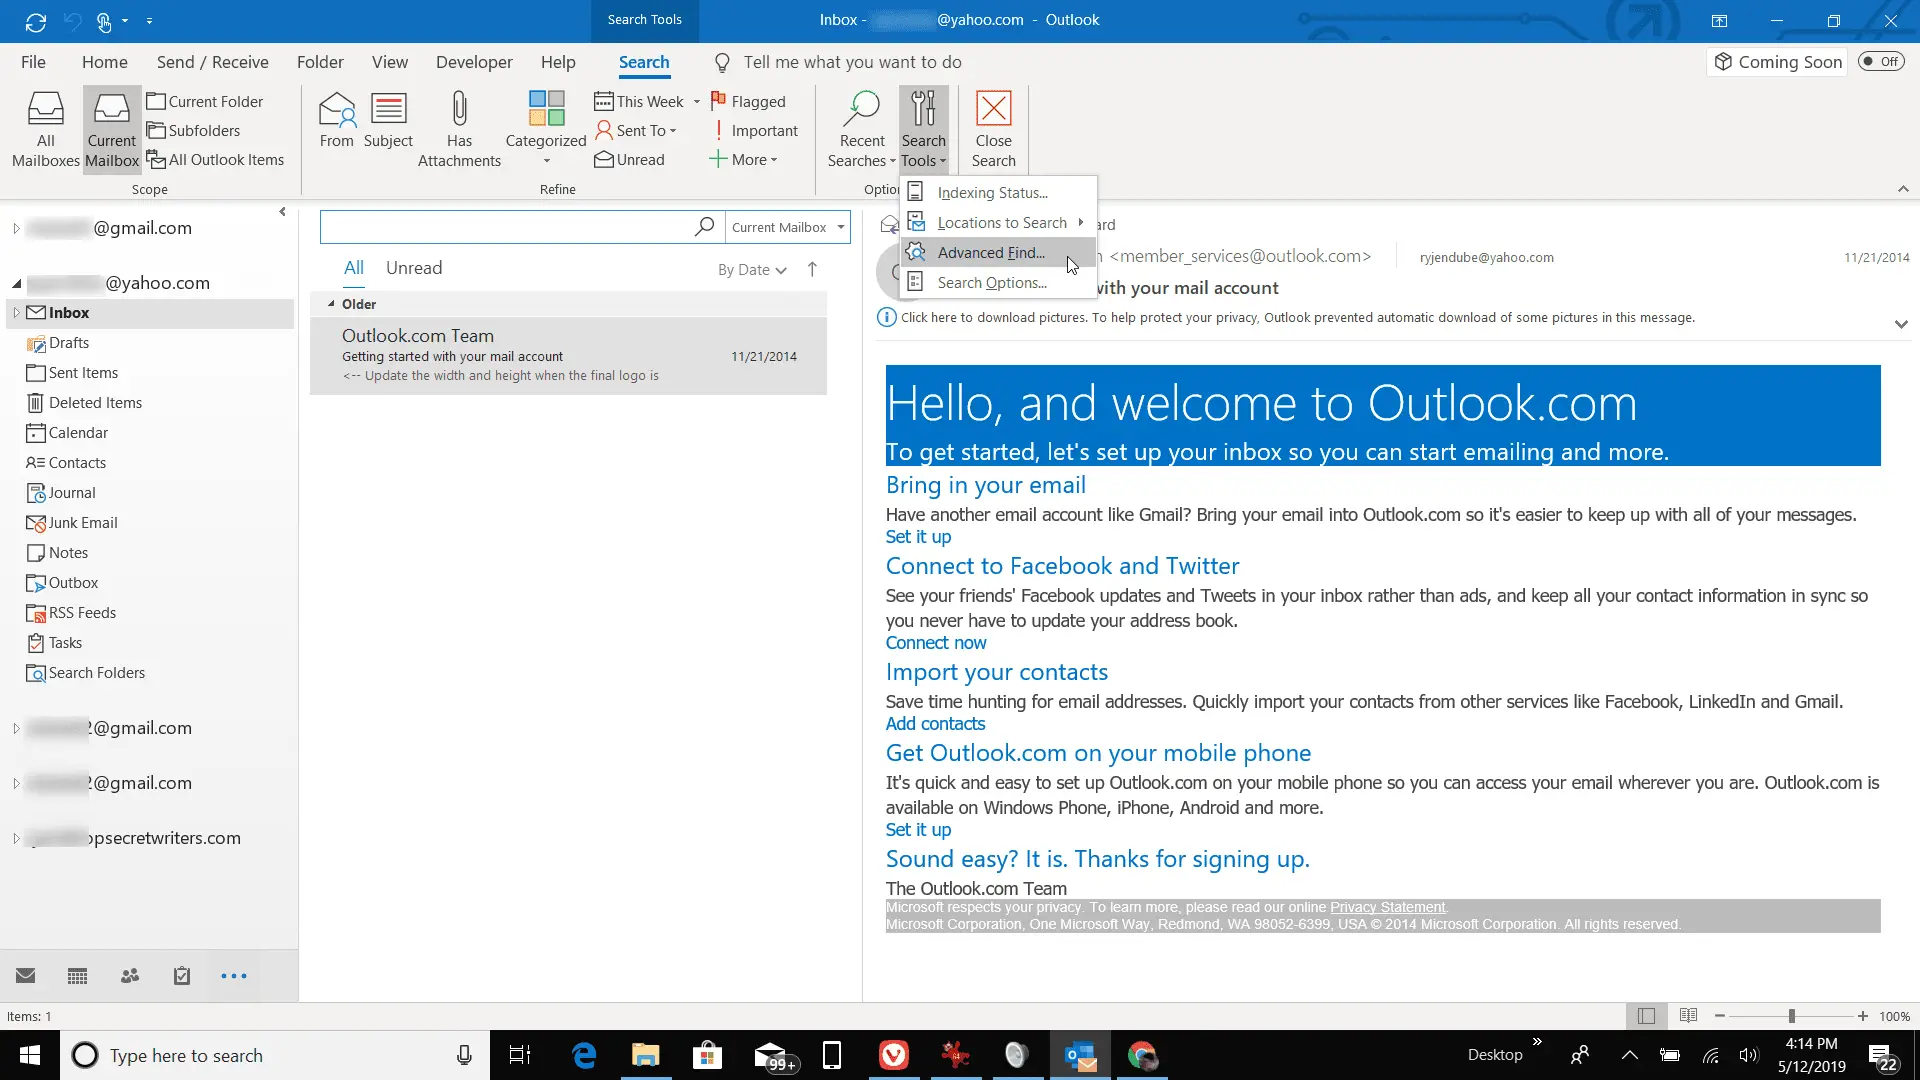 Captura de tela das ferramentas de pesquisa no Outlook